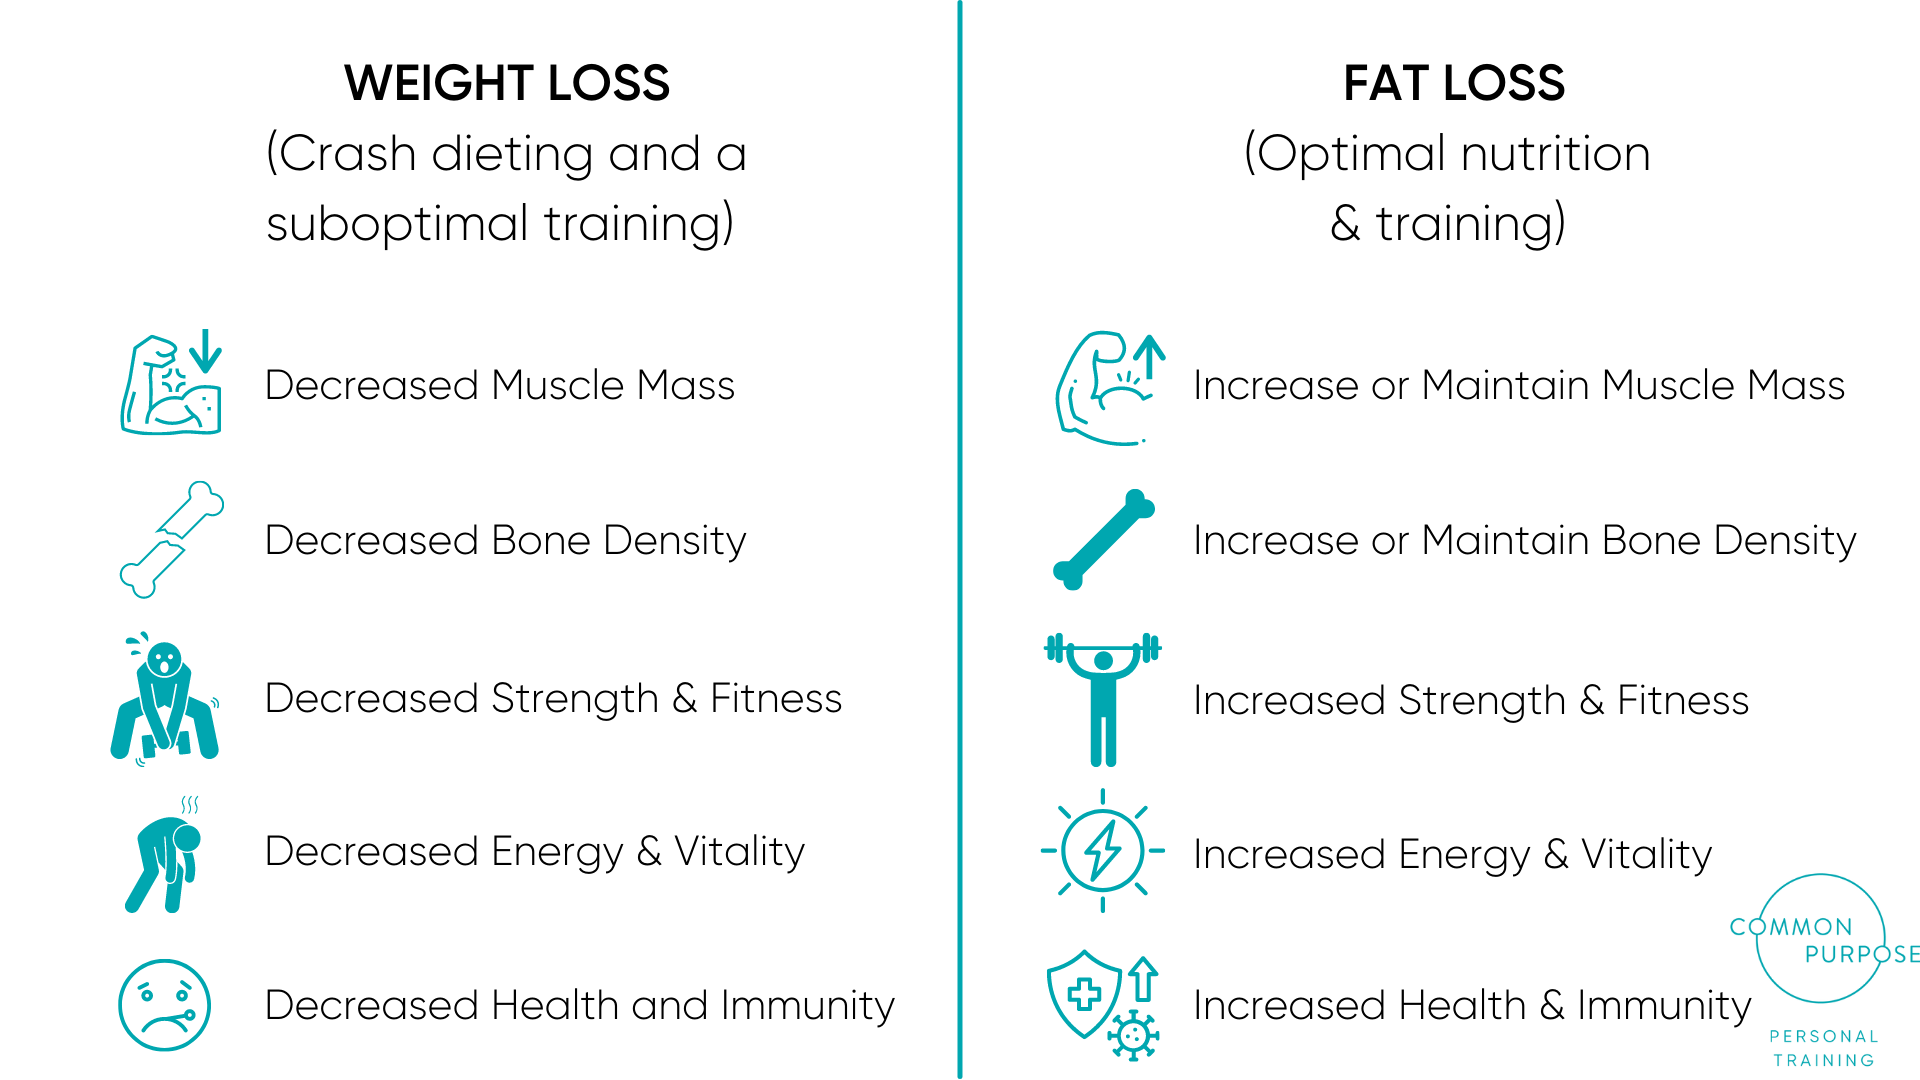 WEIGHT LOSS VS FAT LOSS